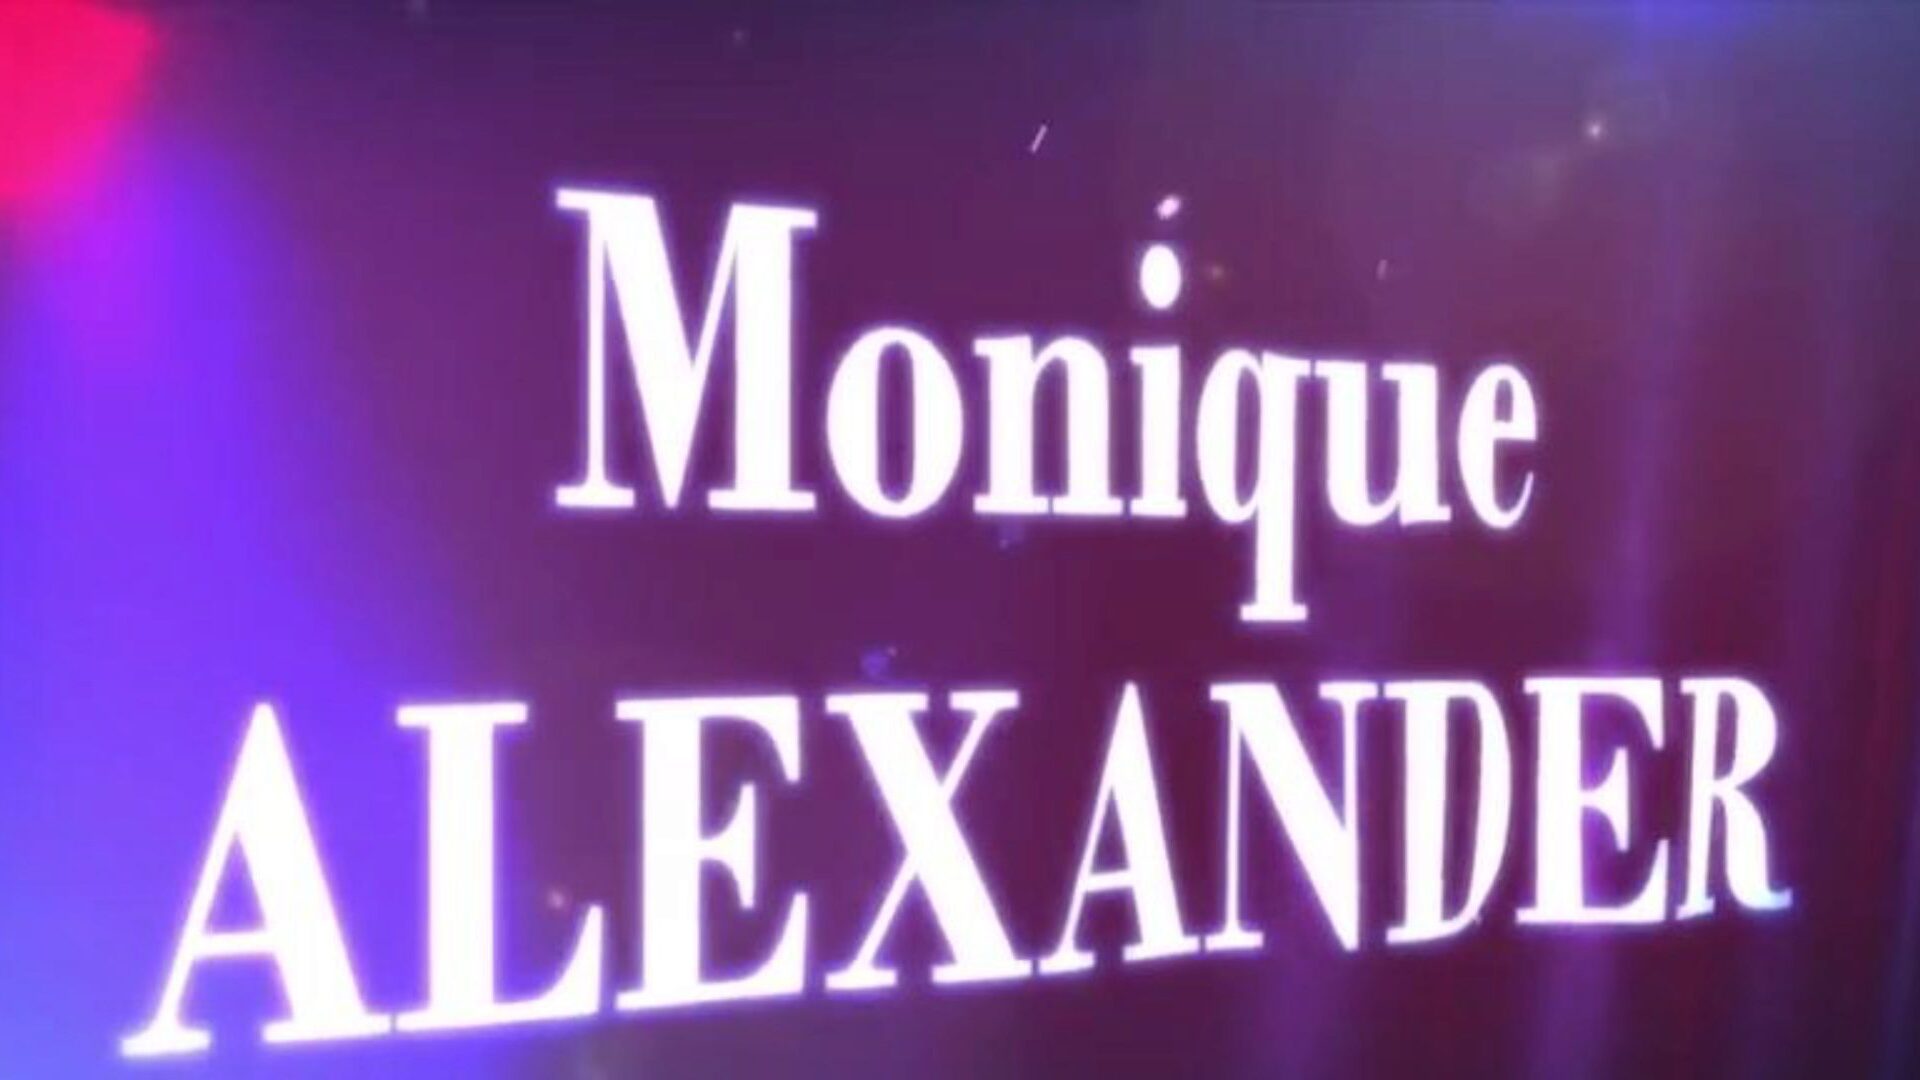 brazzers - ekte konehistorier - hva tar hennes så lange sekvens med monique alexander og xander i hovedrollene